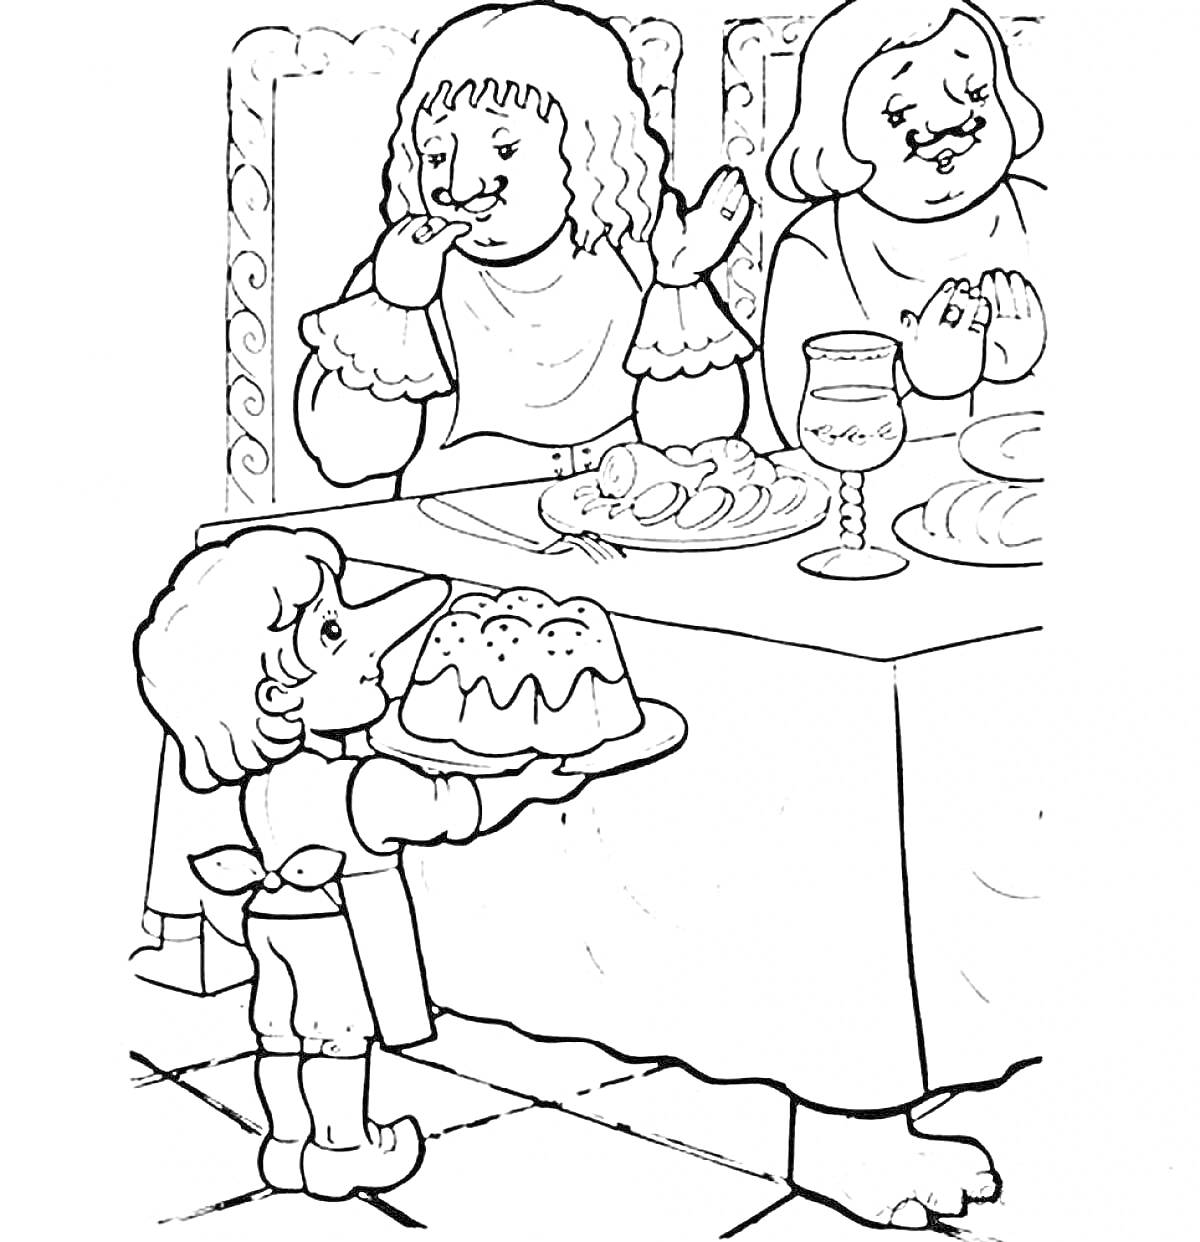 Карлик нос подает блюдо двум женщинам за столом, рядом стоит аперитив